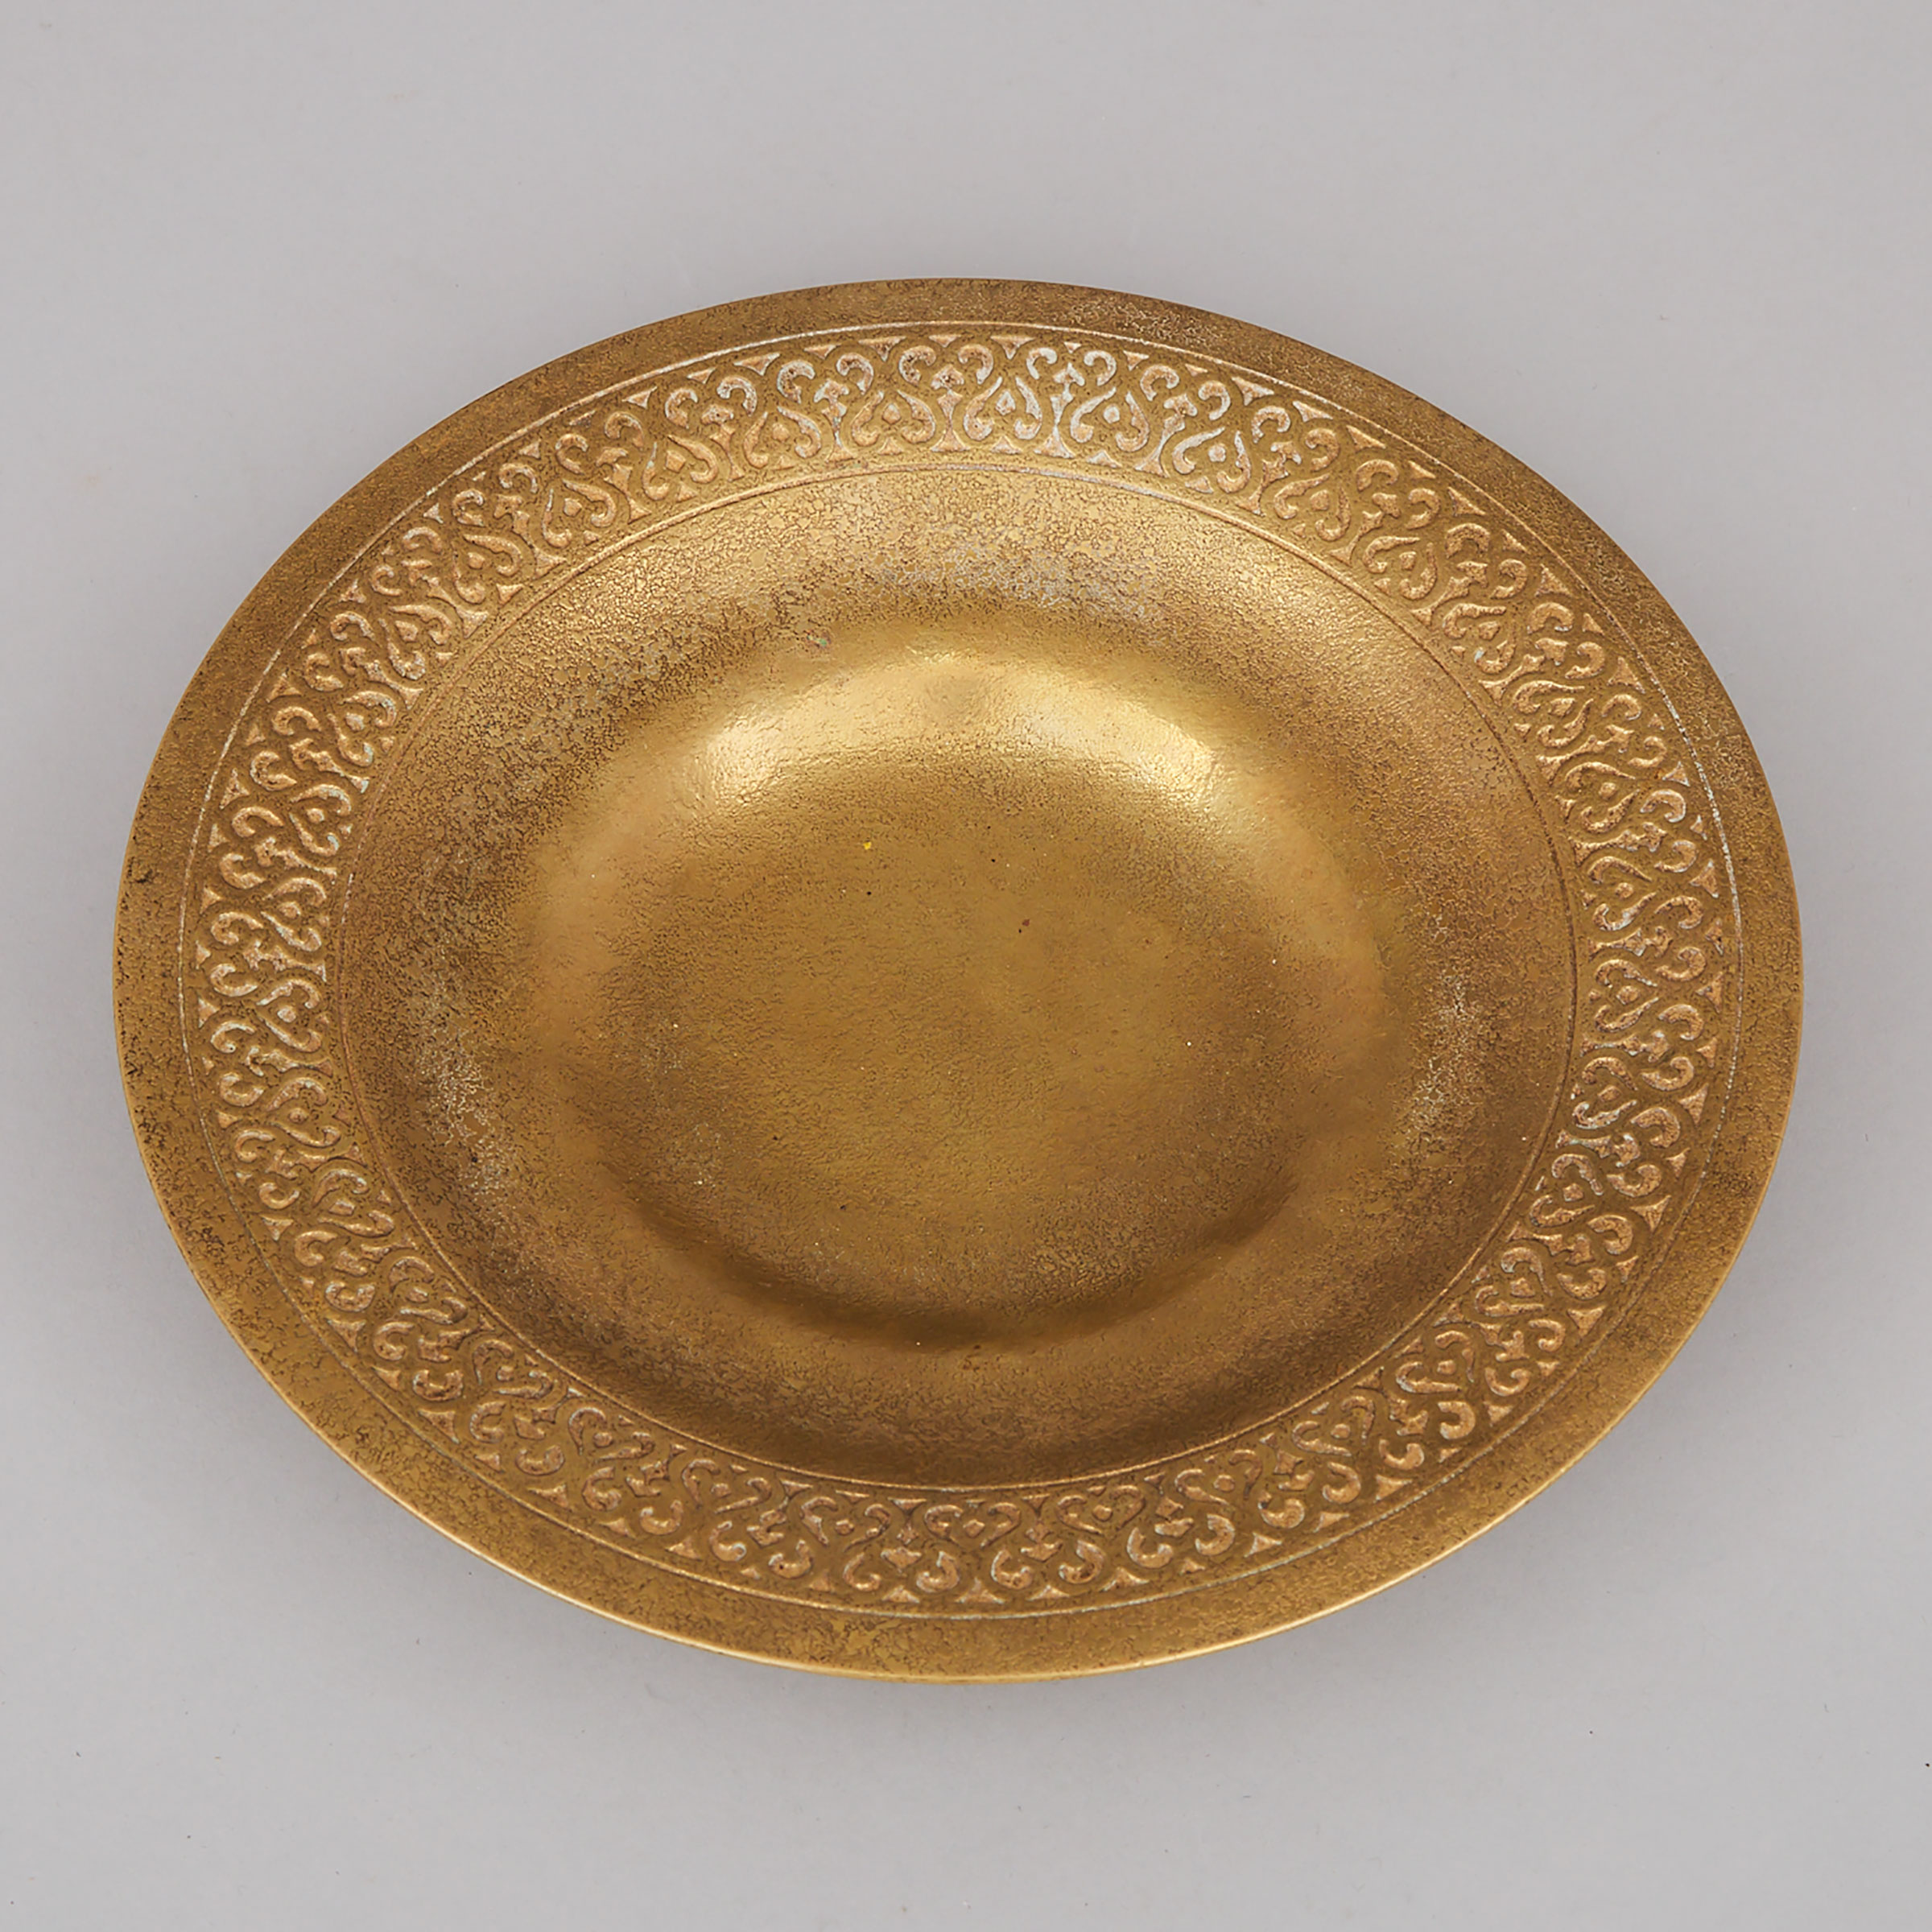 Tiffany Studios Gilt Bronze Dish, New York, c.1910